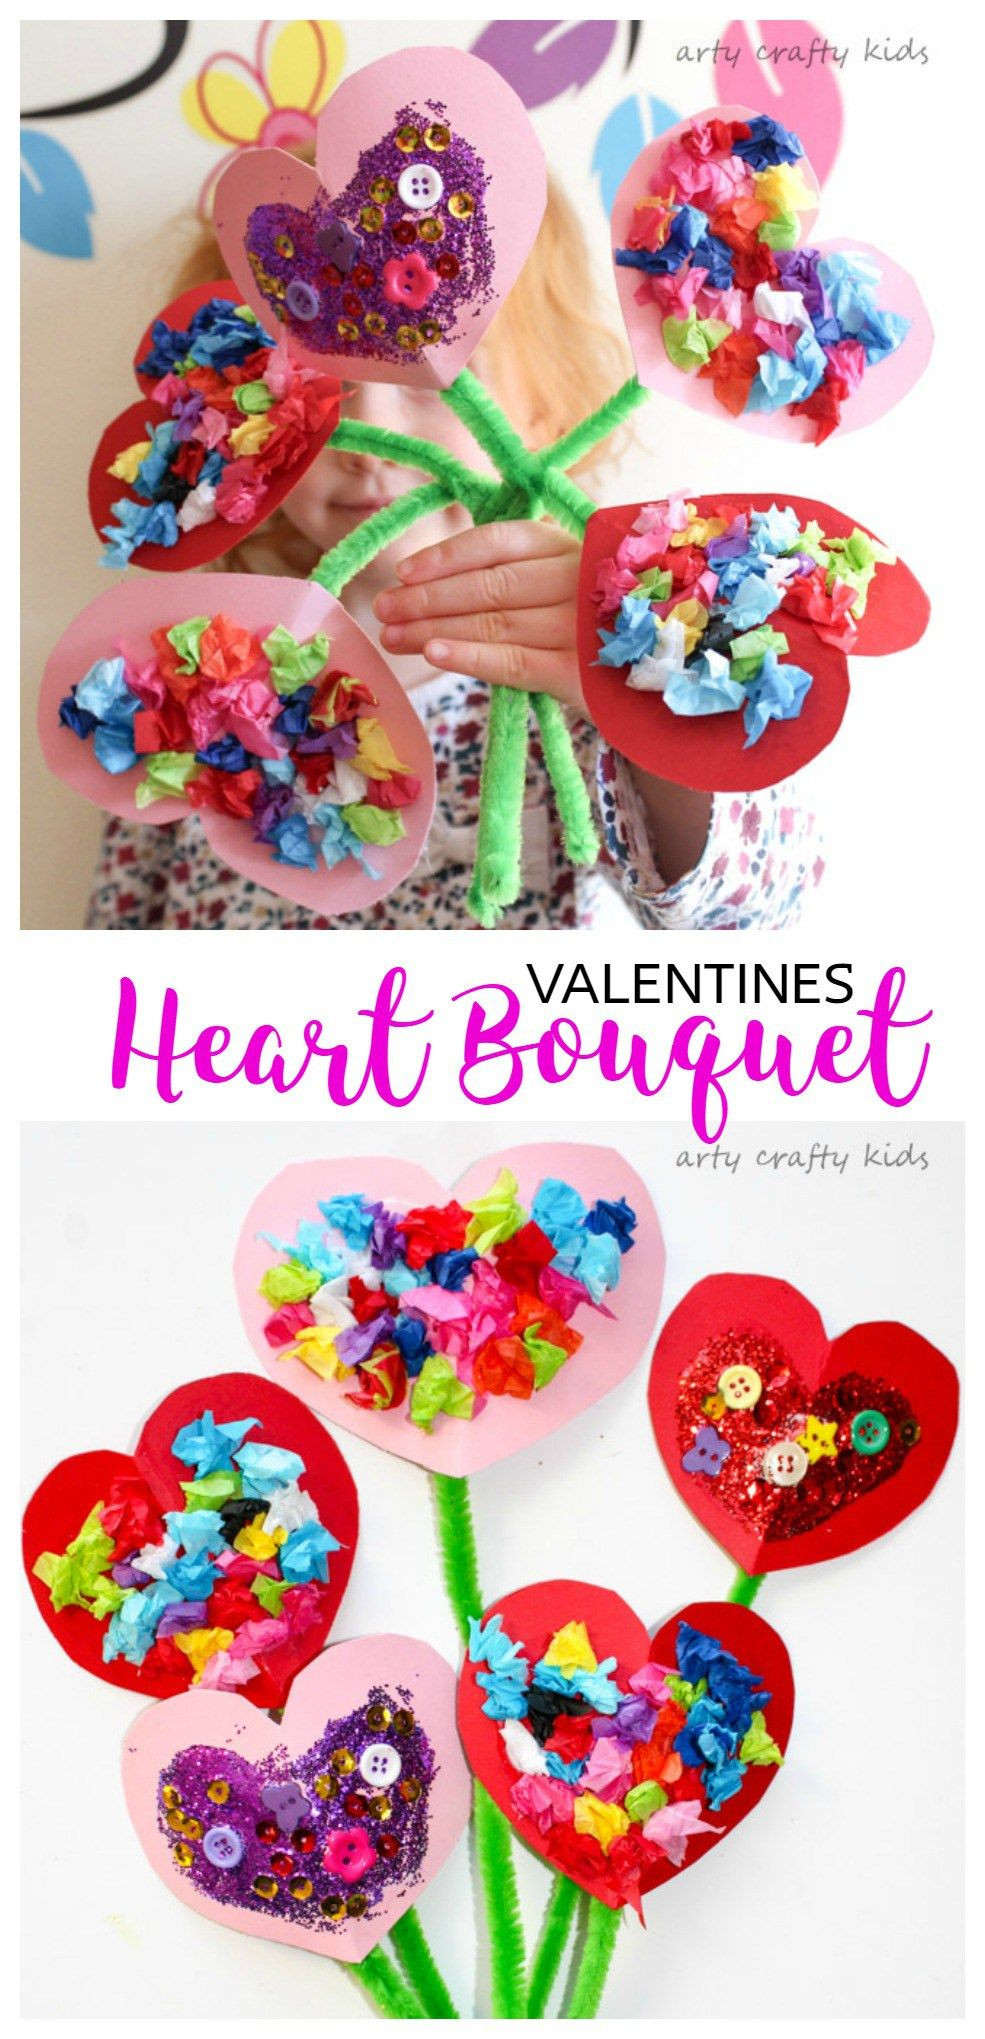 Valentine Craft Ideas For Preschool
 Toddler Valentines Heart Bouquet